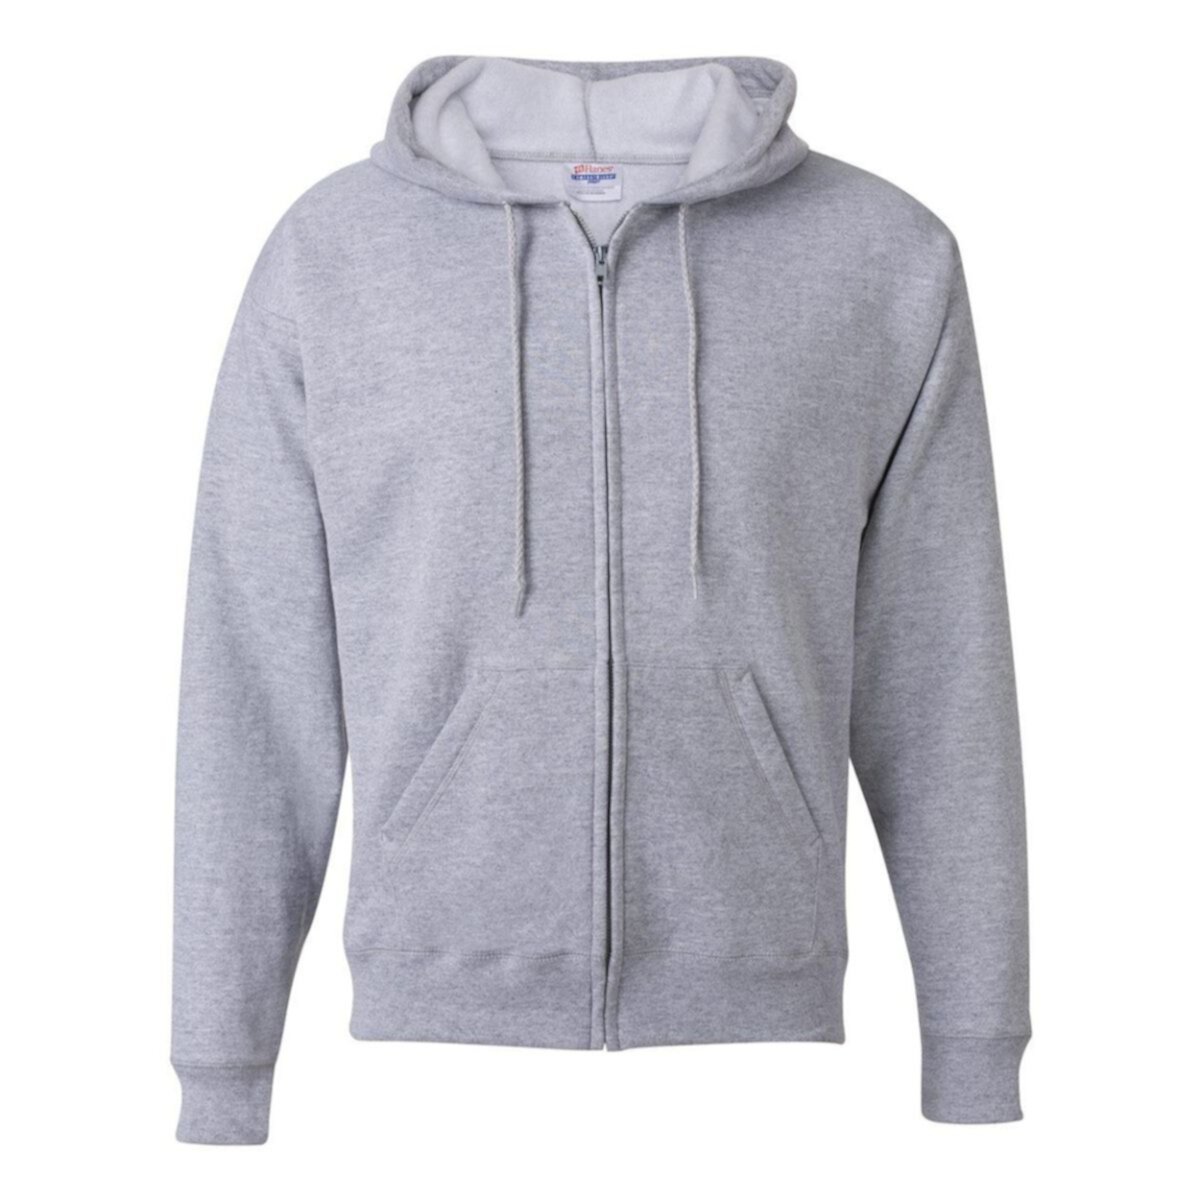 Ecosmart Full-Zip Hooded Sweatshirt Floso